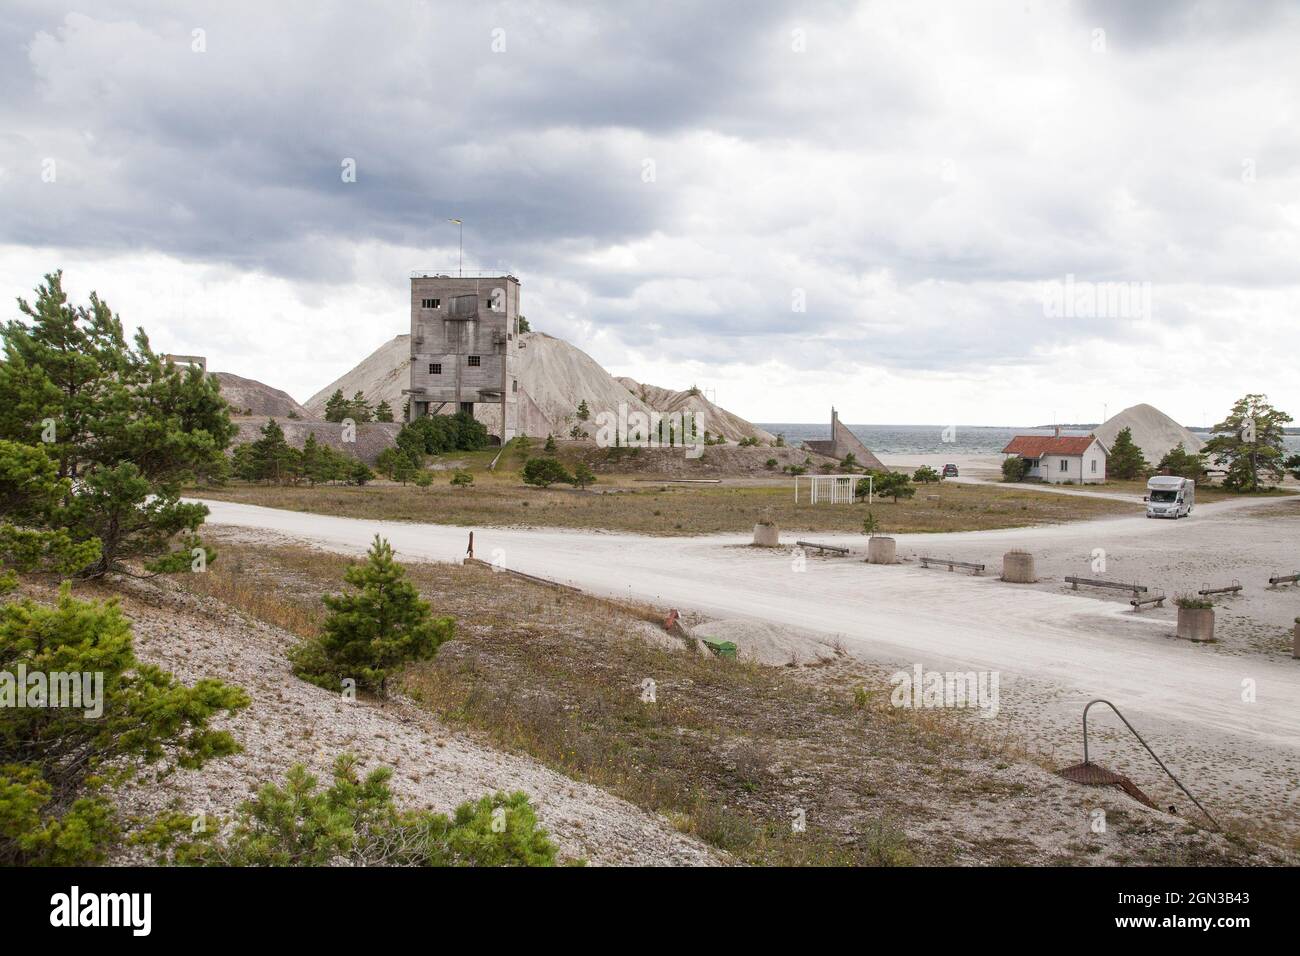 FURILLEN ist eine Insel nordöstlich von Gotland Schweden, die im 20. Jahrhundert eine Kalksteinindustrie gab, bis sie vom schwedischen Militär für die Öffentlichkeit gesperrt wurde.heute ist sie als Naturschutzgebiet und als Natura 2000-Gebiet geöffnet Stockfoto